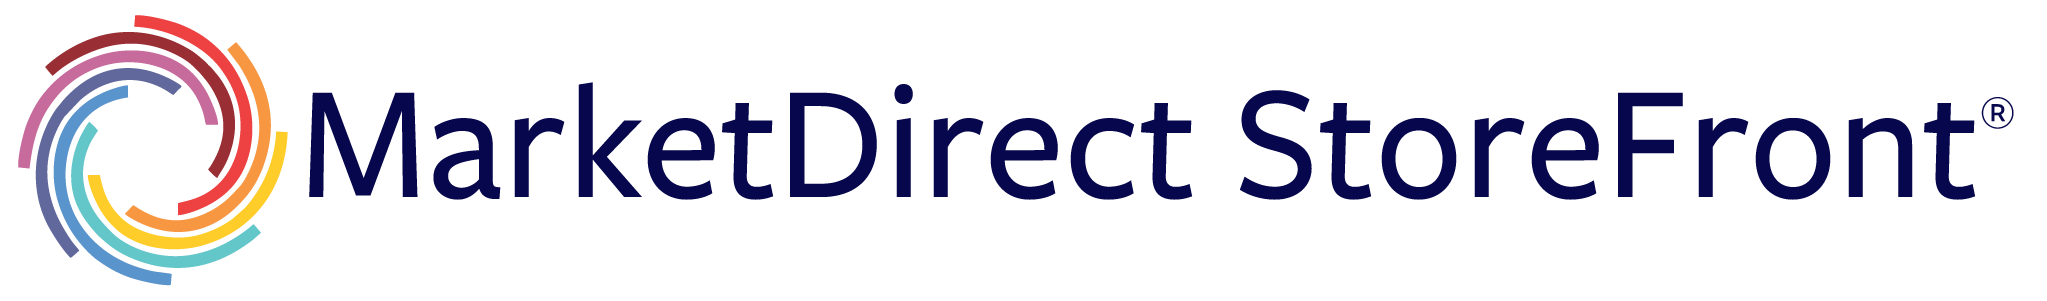 MarketDirect StoreFront